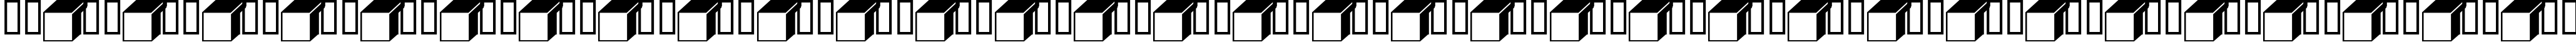 Пример написания русского алфавита шрифтом Boxing Brophius